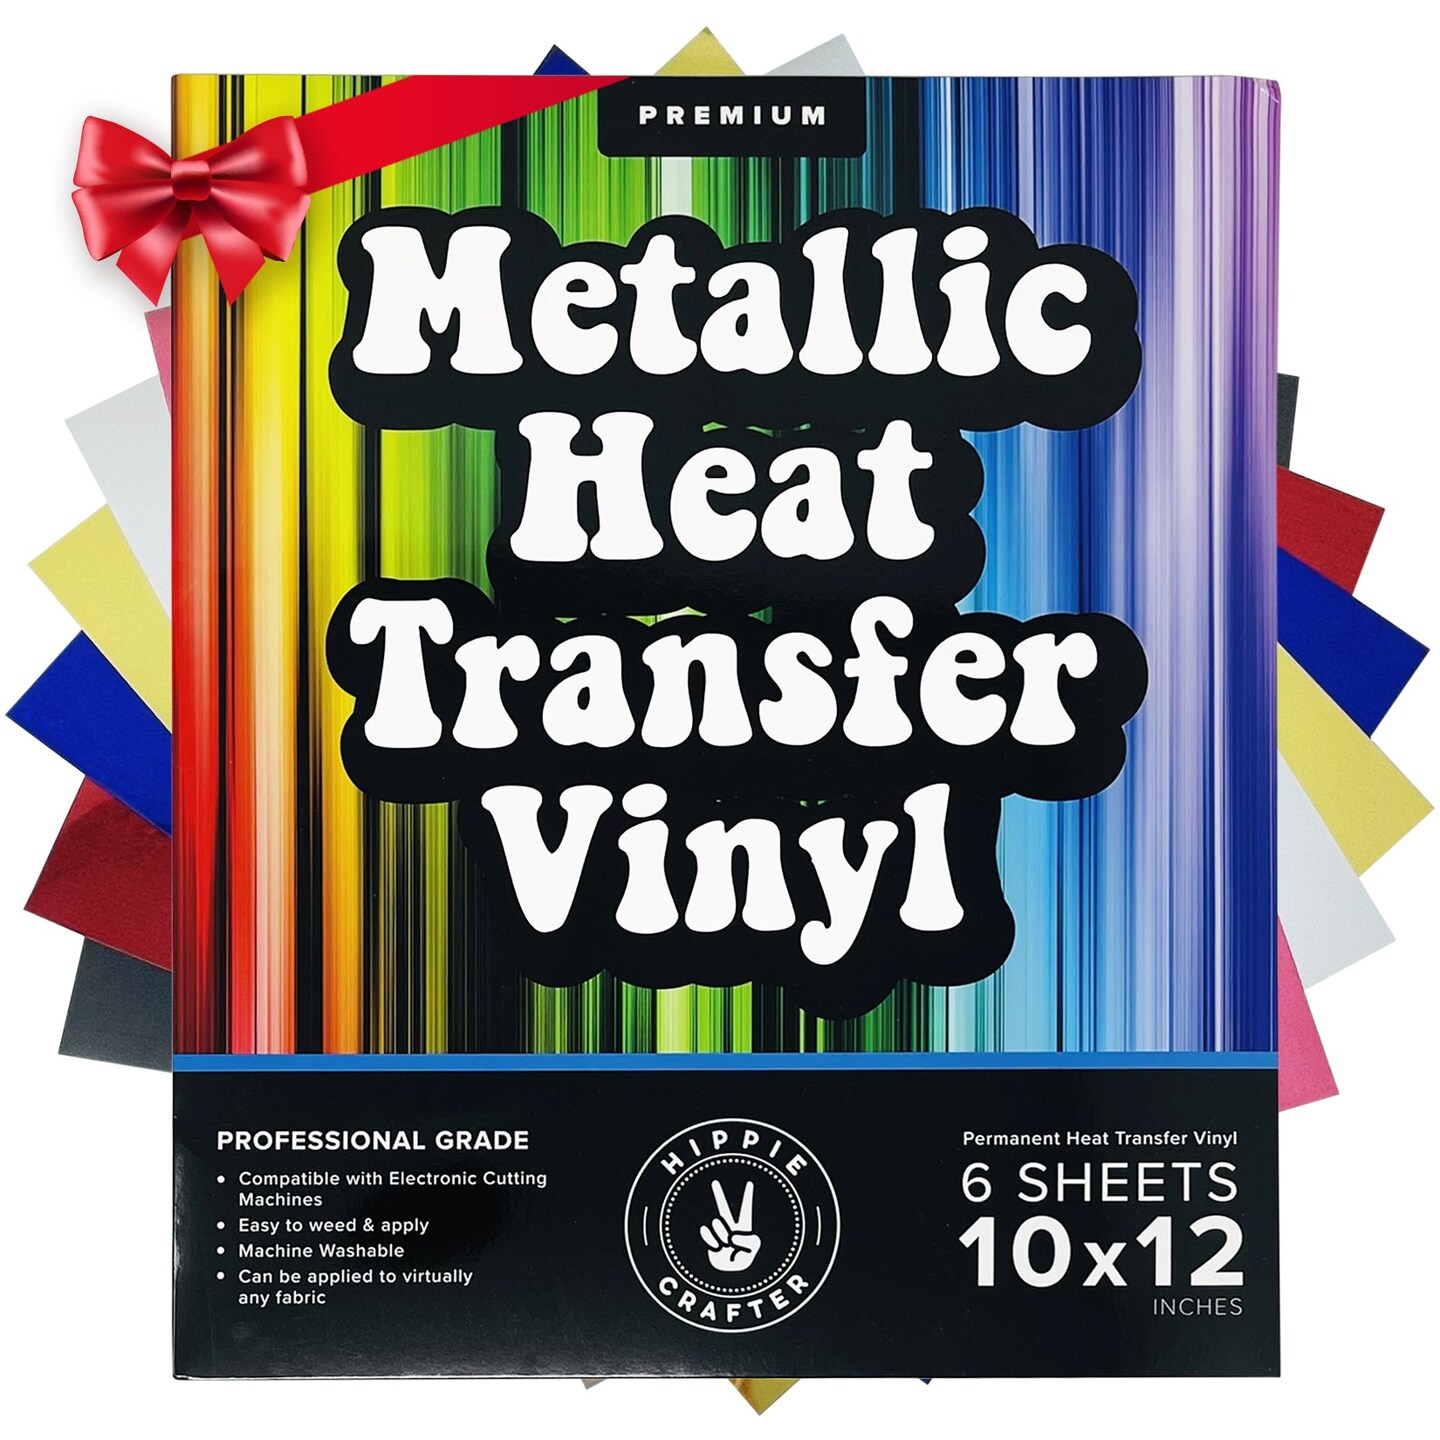 Rose Gold Transfer Vinyl, Gold Heat Transfer Vinyl